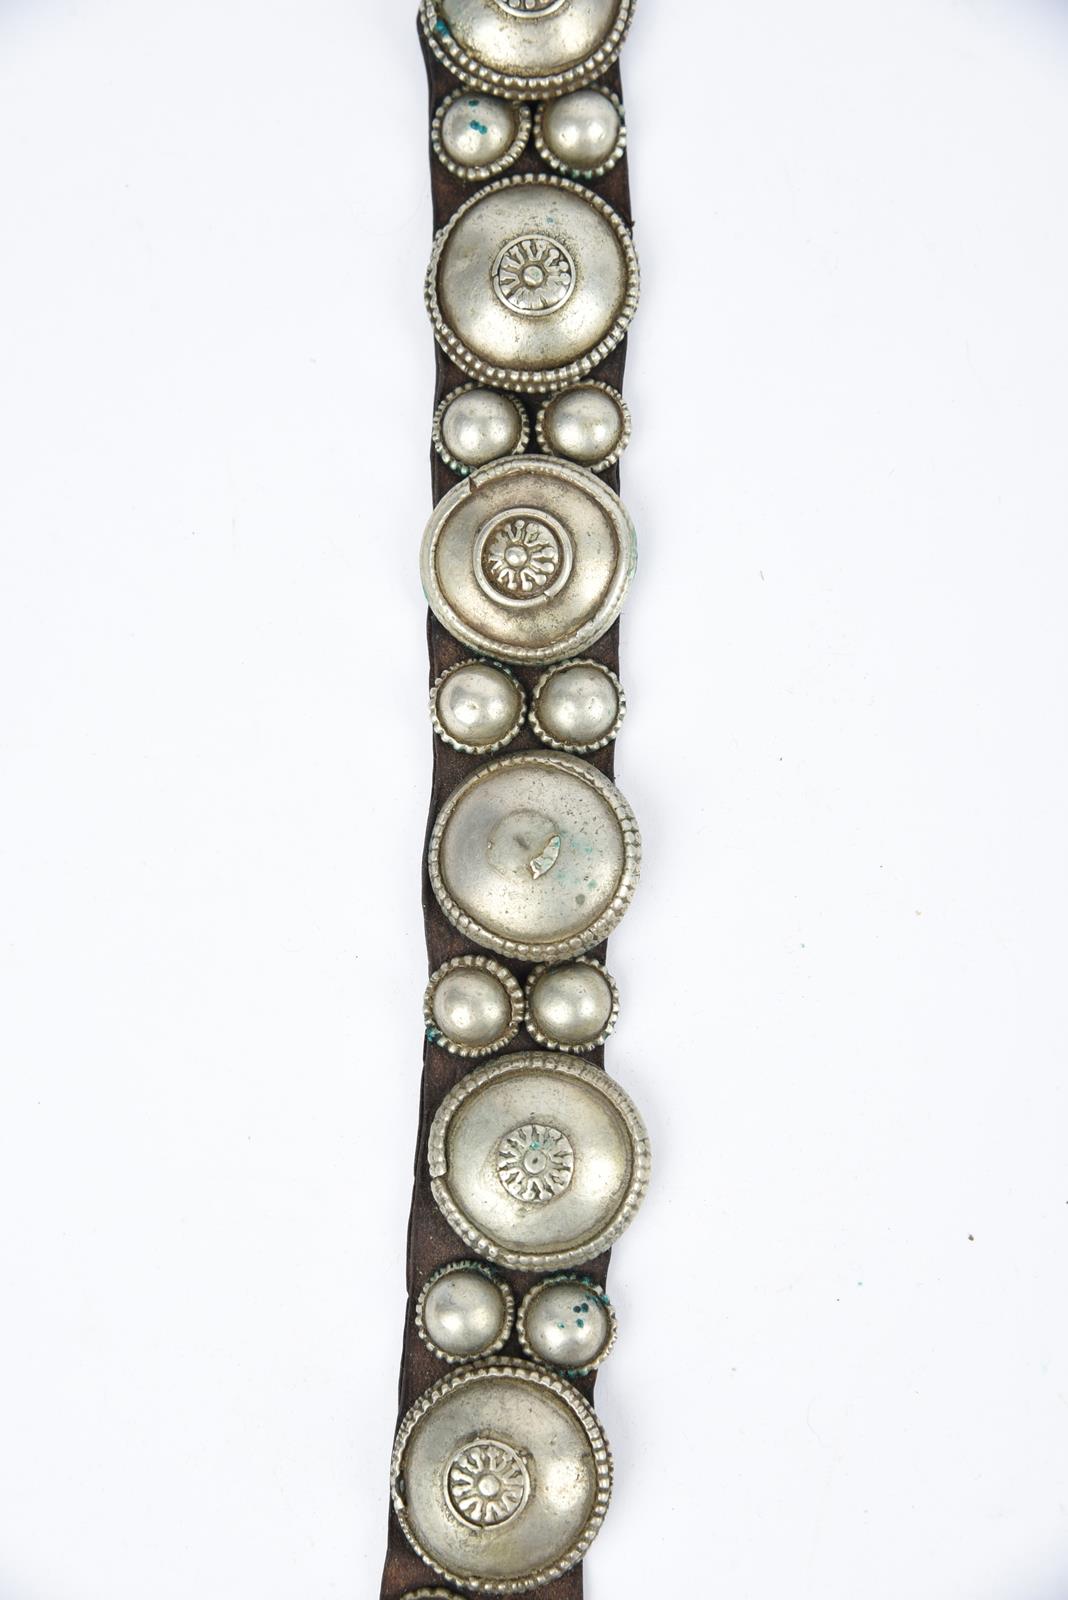 λA Bedouin amulet chest ornament cloth with numerous sewn on amulets and beads, 62cm long, and three - Image 12 of 27